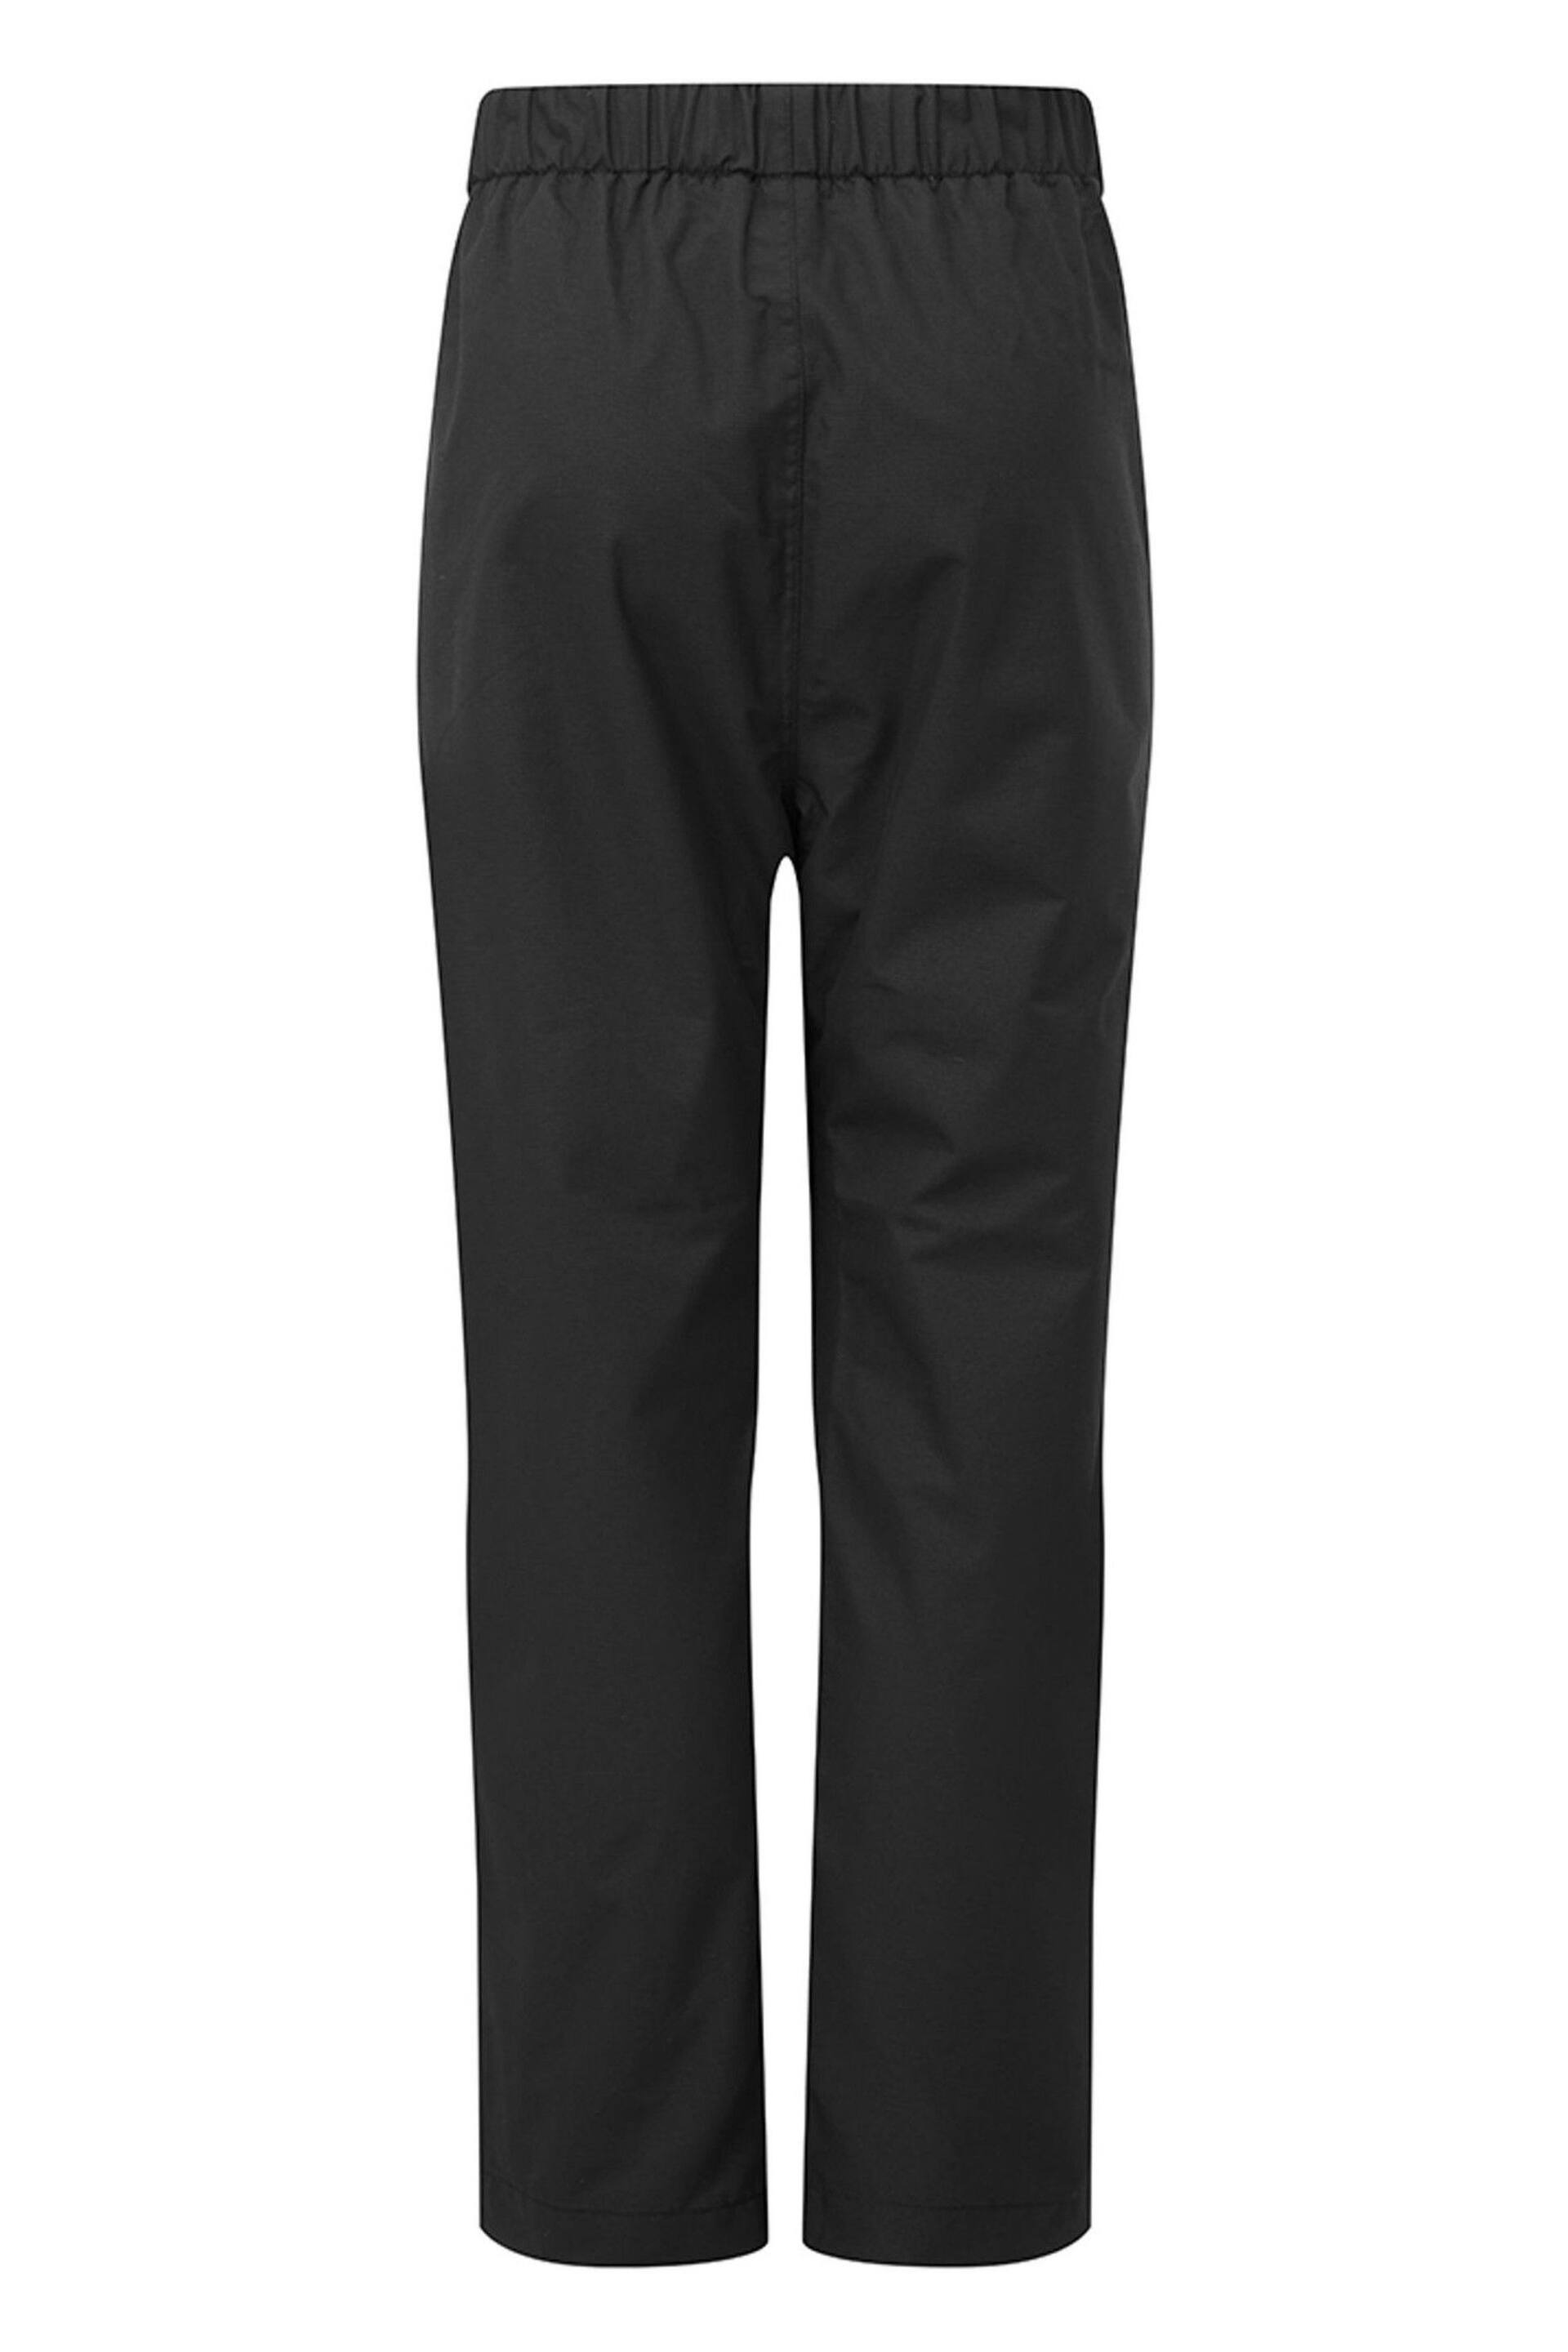 Tog 24 Black Hainworth Waterproof Trousers - Image 2 of 2